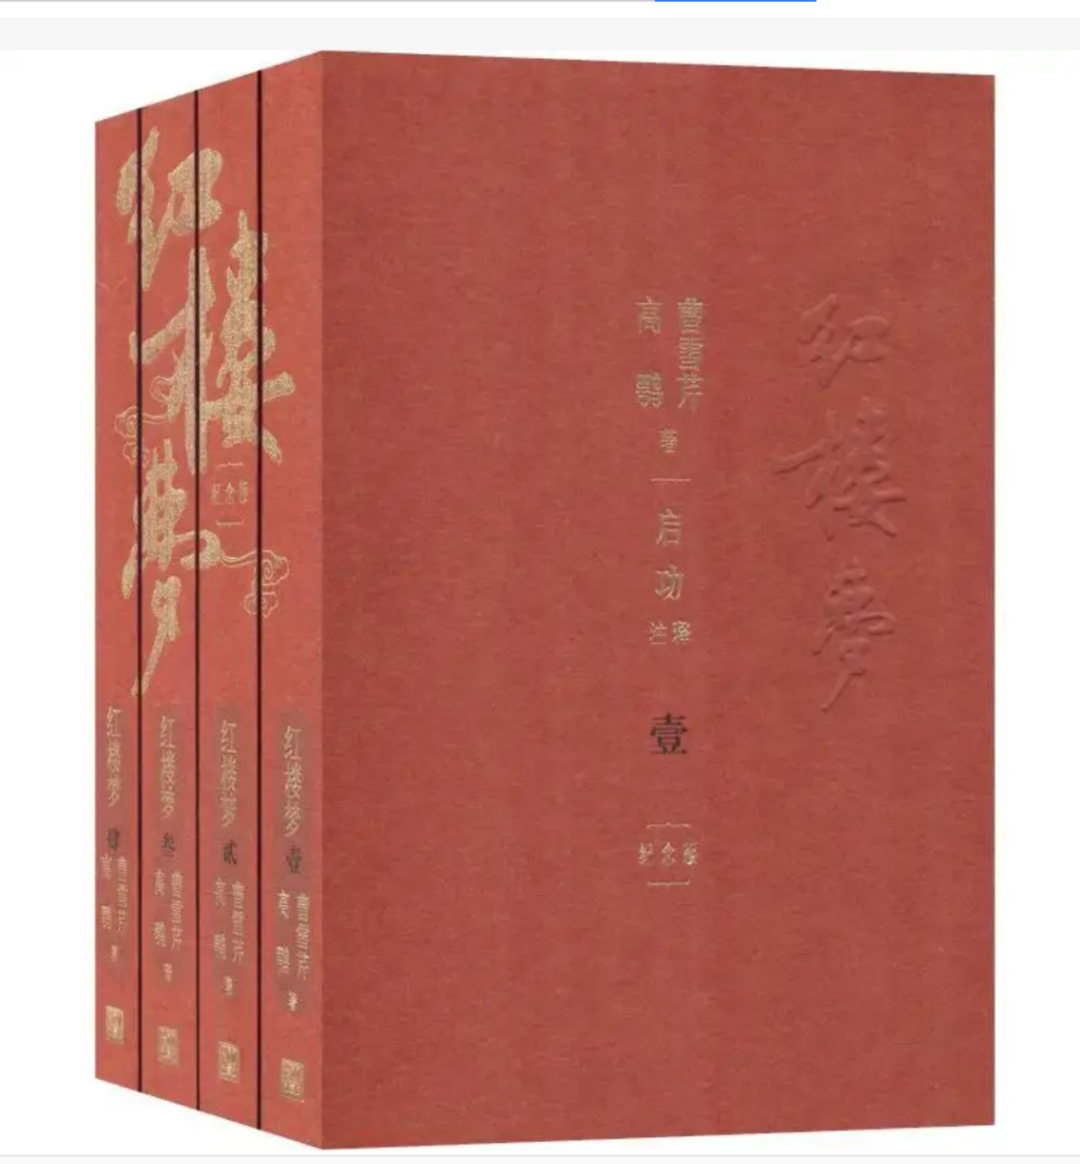 为何说苏东坡就是一部媲美金瓶、红楼的传奇大书 ： 徐景洲